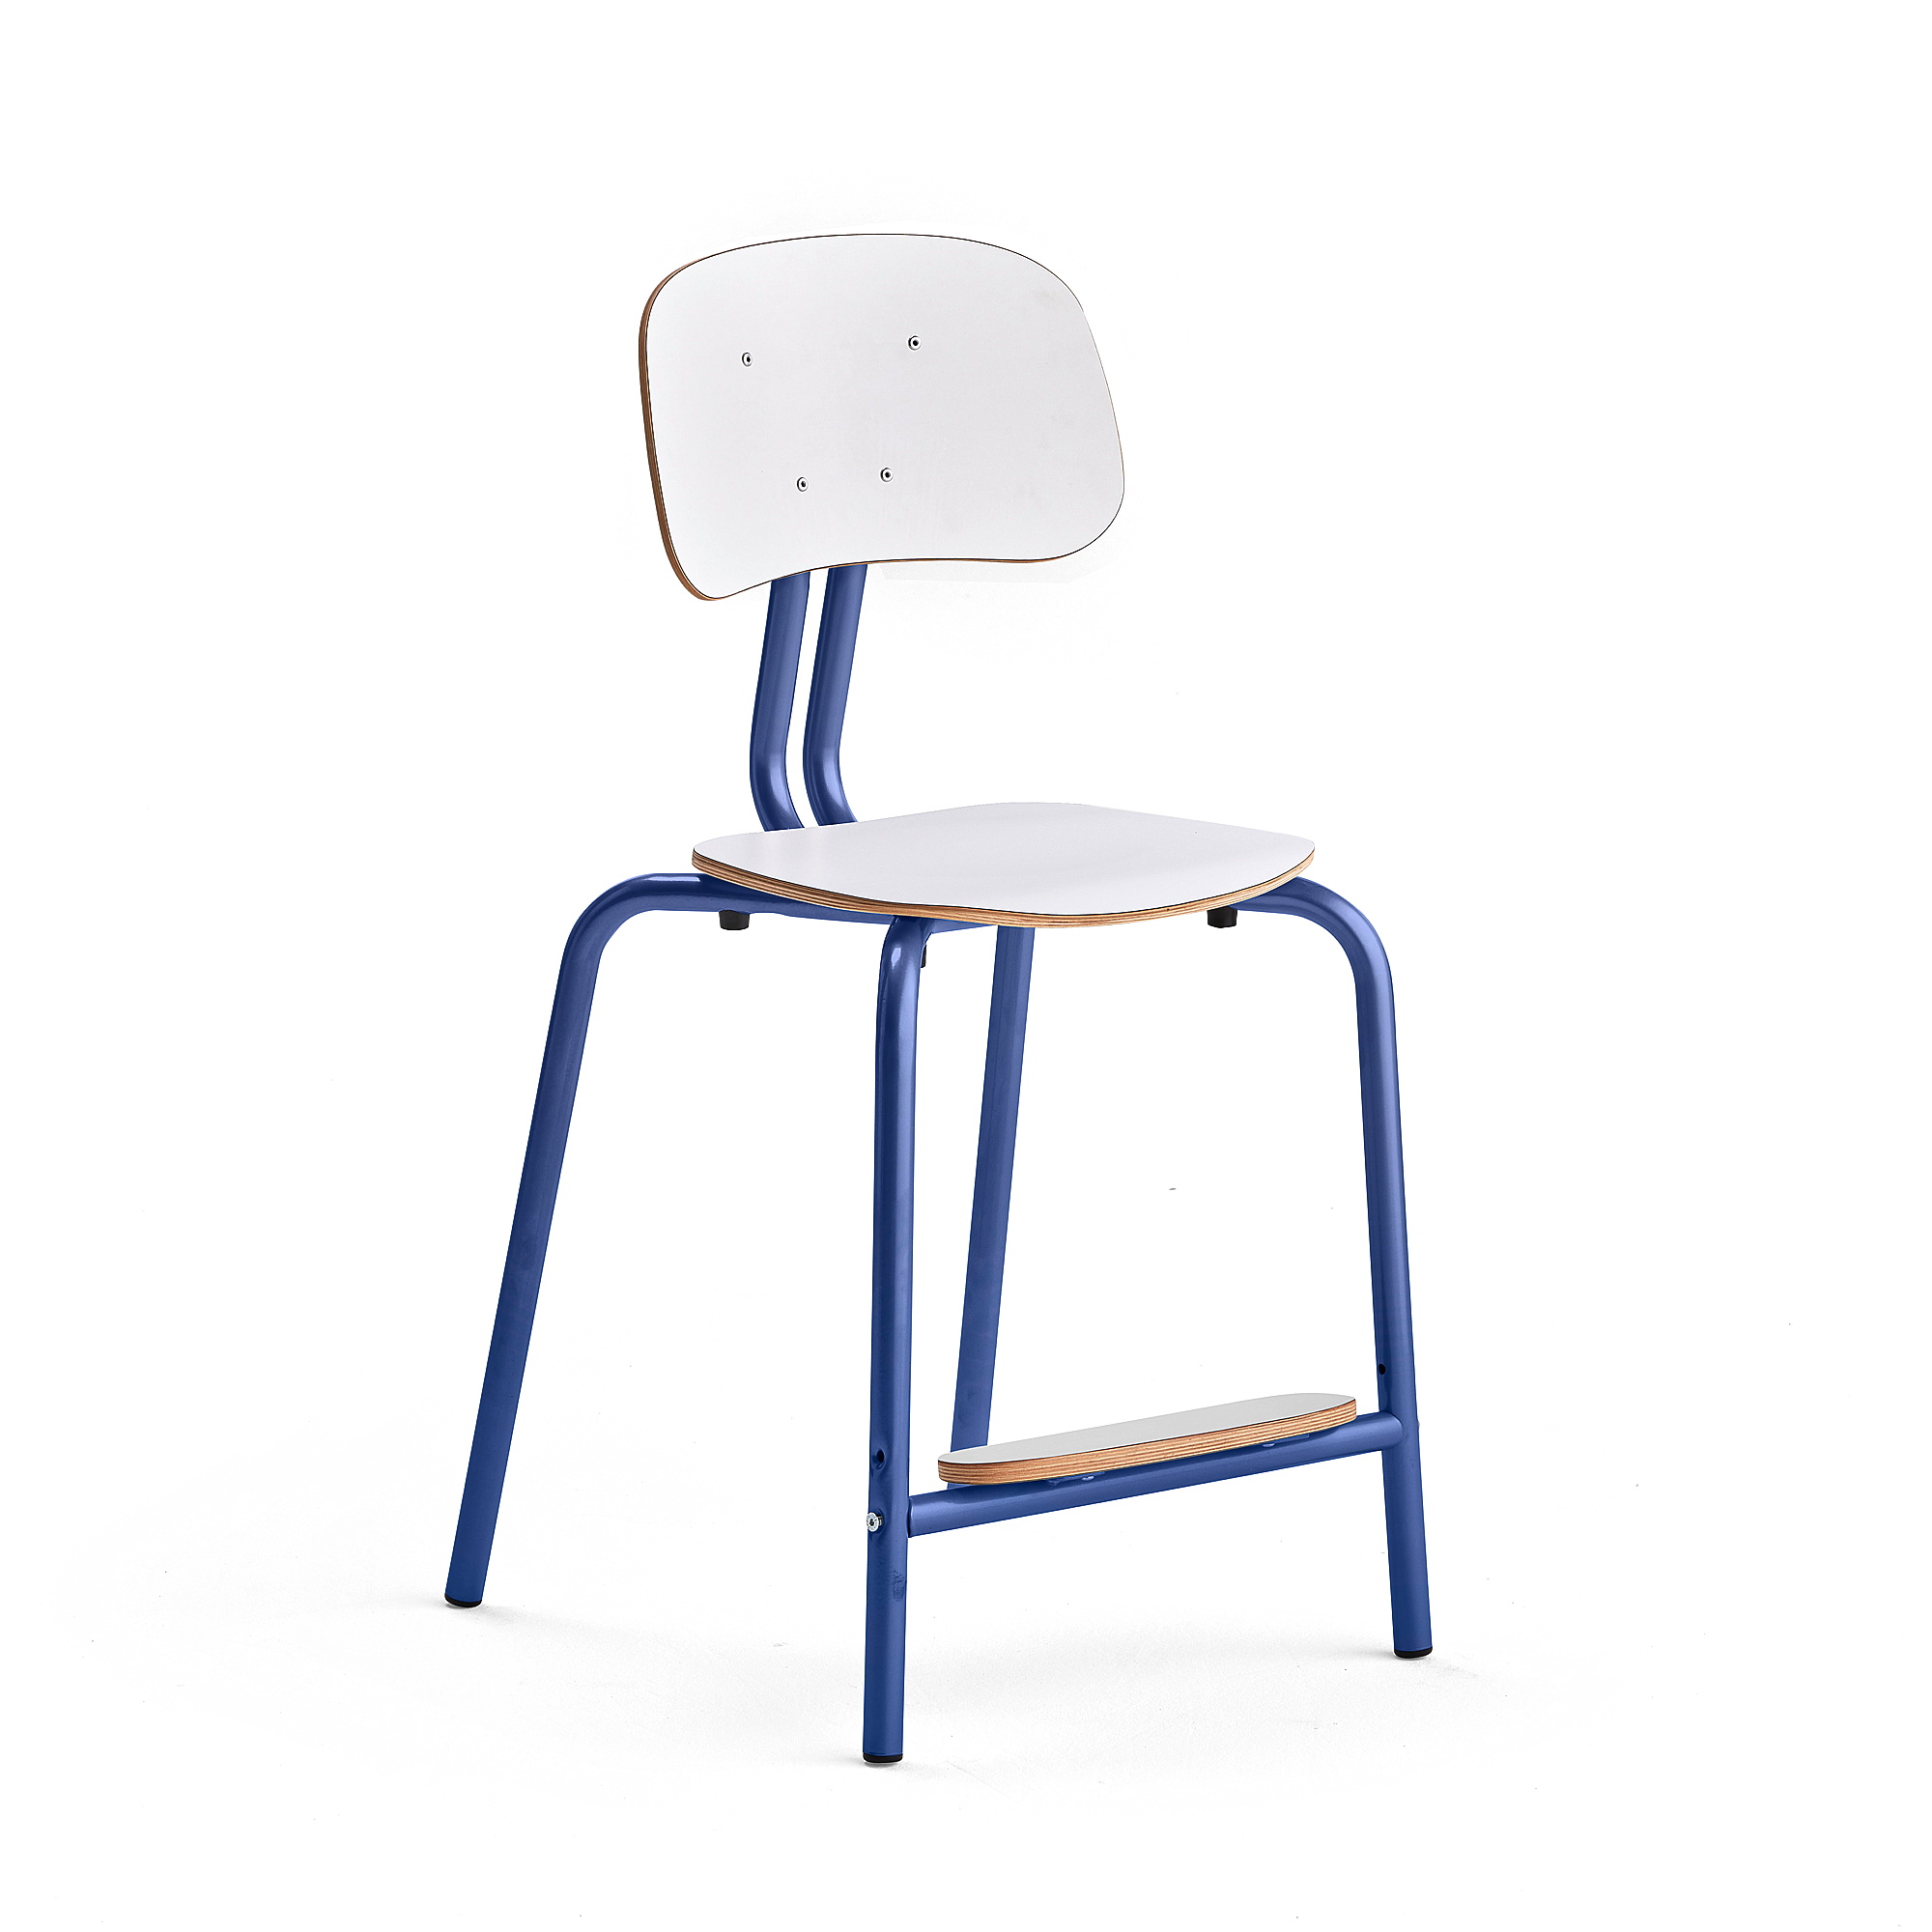 Školní židle YNGVE, 4 nohy, výška 520 mm, tmavě modrá/bílá